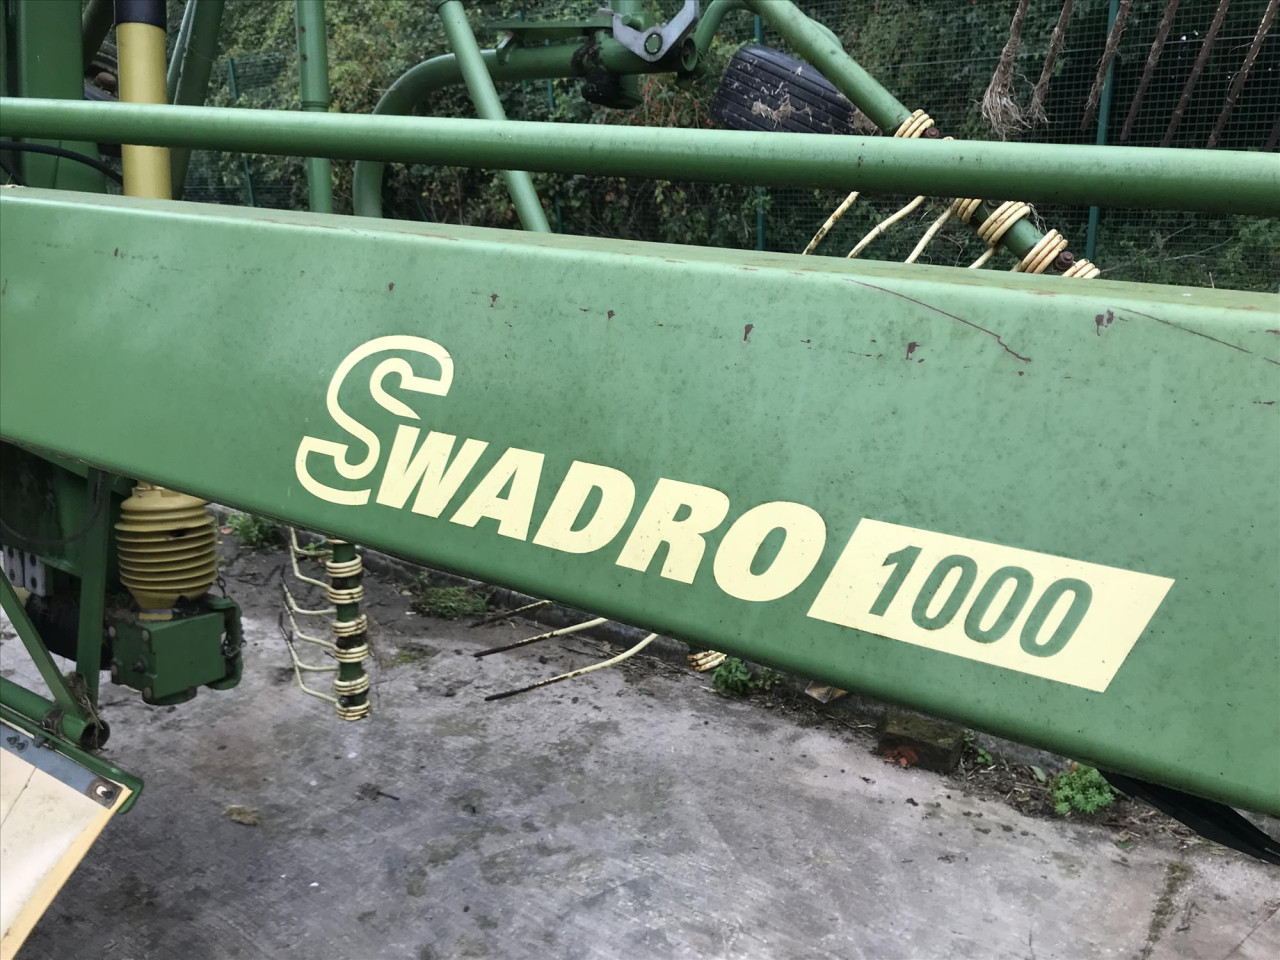 SWADRO 1000